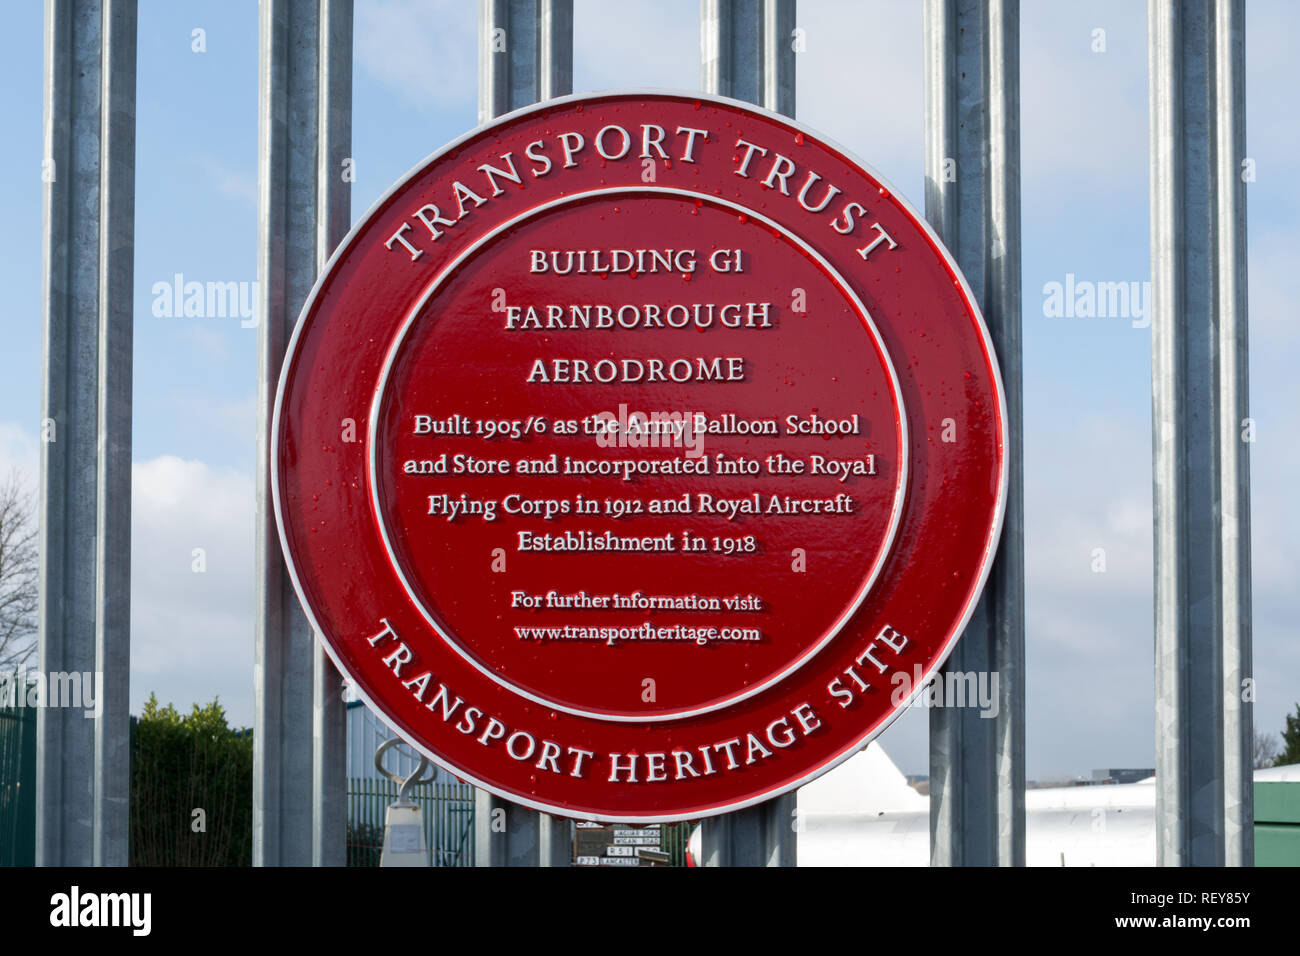 Site du patrimoine de transport rouge roue rouge (plaque) à l'extérieur de la fiducie Farnborough Air Sciences (RAPIDE) musée reconnaissant le bâtiment G1 de l'Aérodrome de Farnborough Banque D'Images